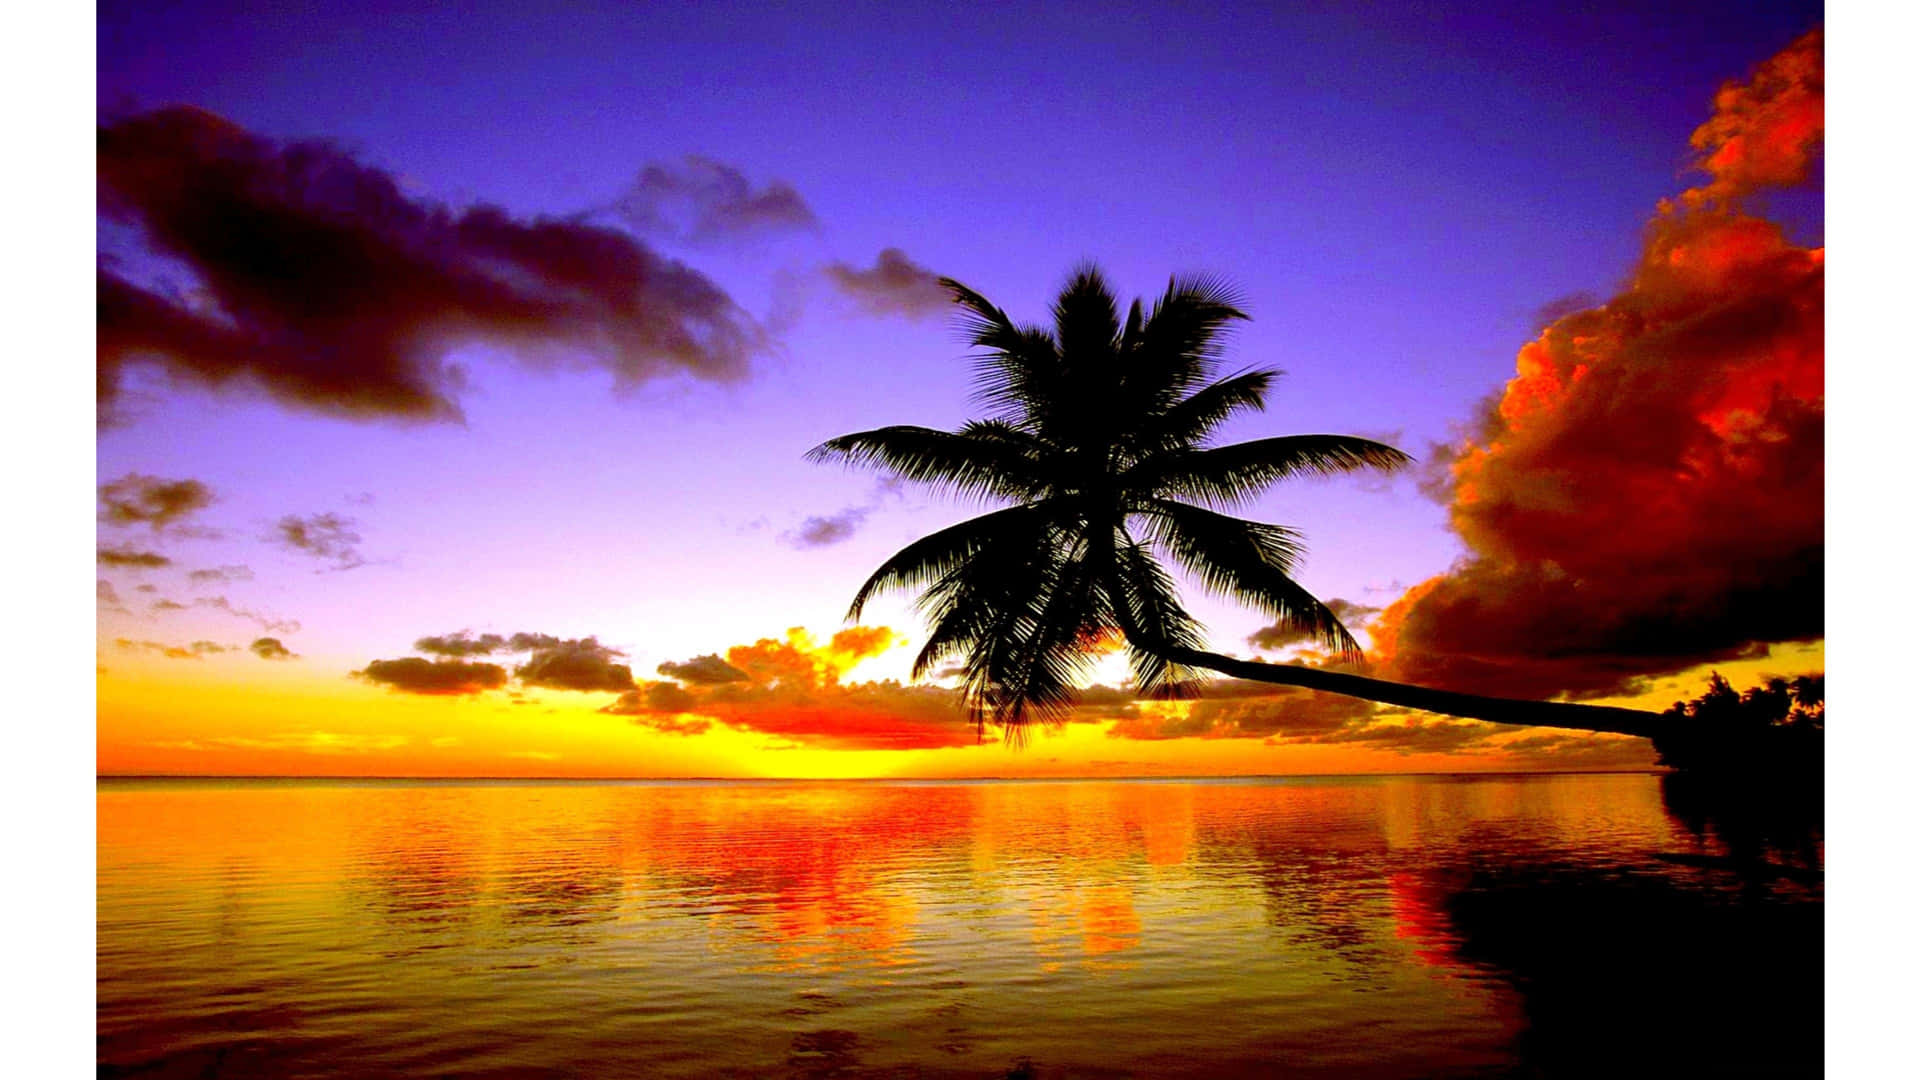 Njutaav En Fantastisk Utsikt Över Paradiset Med En Palm.